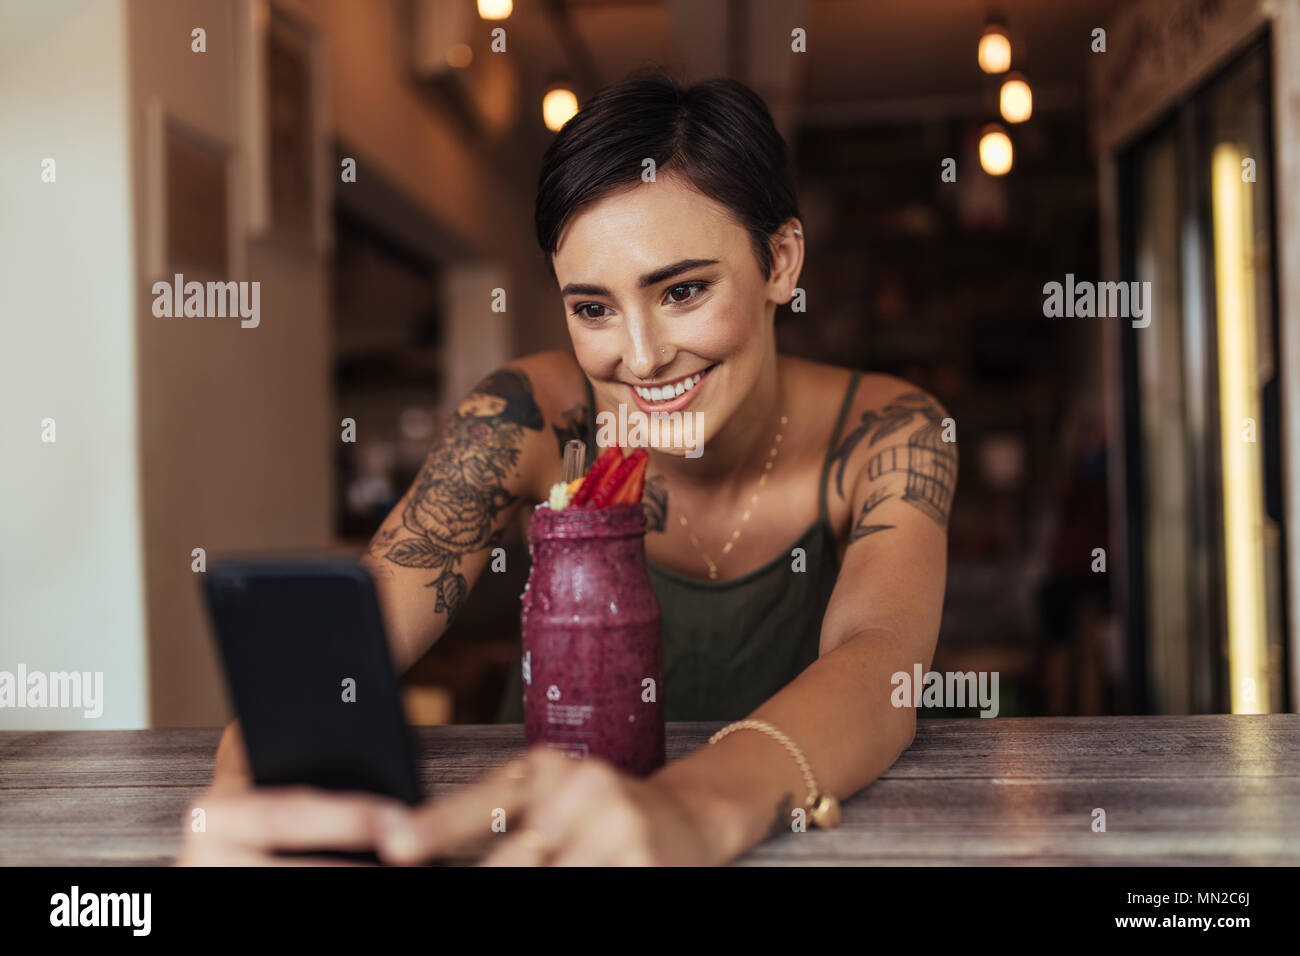 Lächelnde Frau mit einem selfie mit einem Smoothie vor ihr Handy für ihr Essen blog platziert. Essen blogger Fotografieren für Ihren Blog. Stockfoto